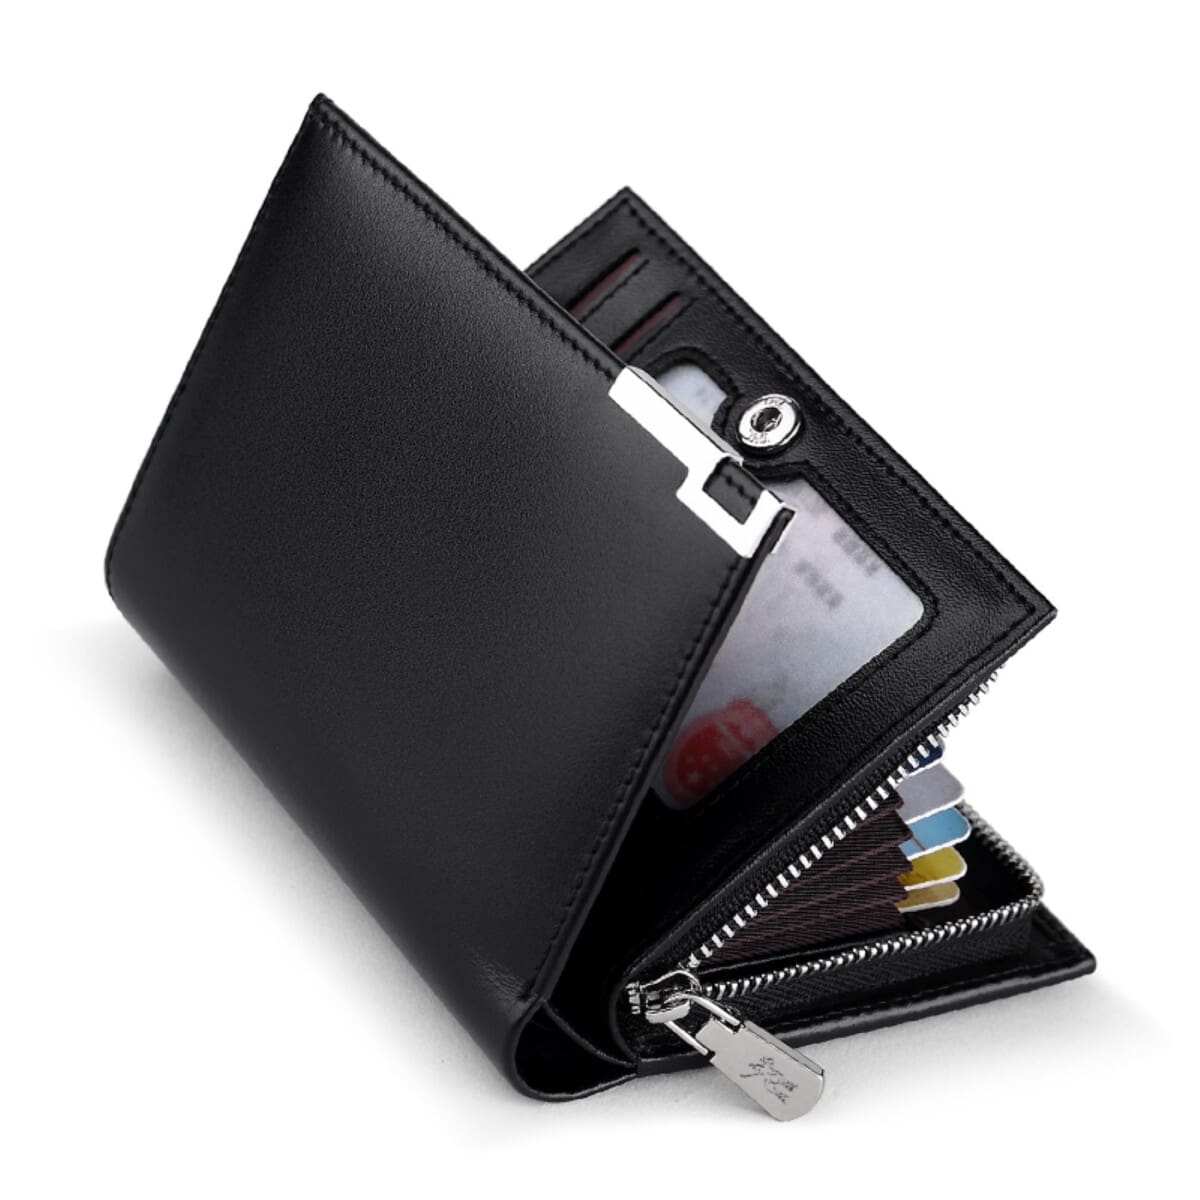 Δερμάτινο μαύρο πορτοφόλι με πολλαπλές θήκες για κάρτες και μετρητά .